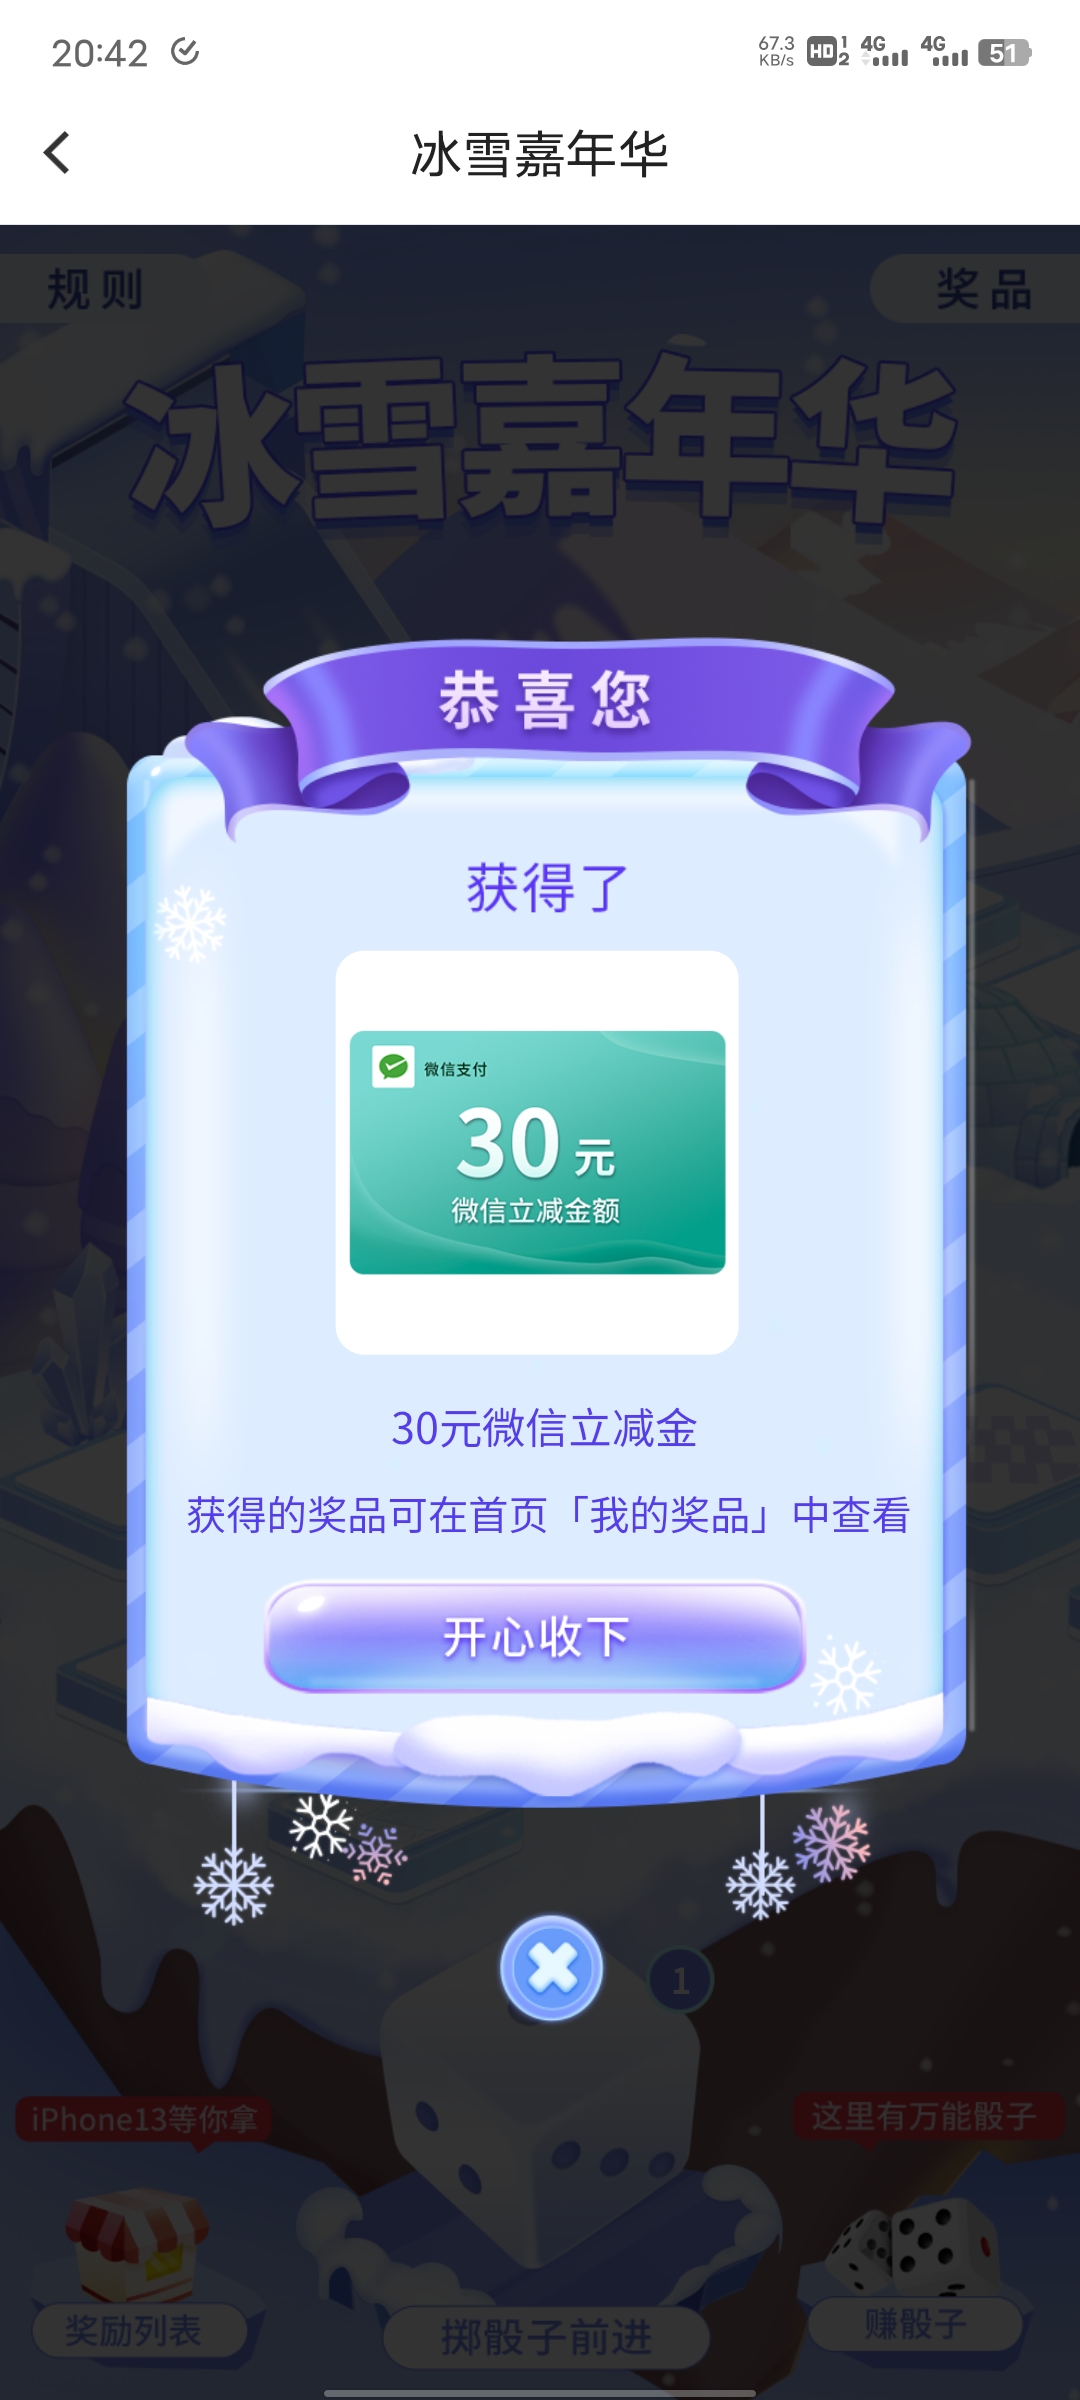 北京银行摇骰子活动有水-惠小助(52huixz.com)